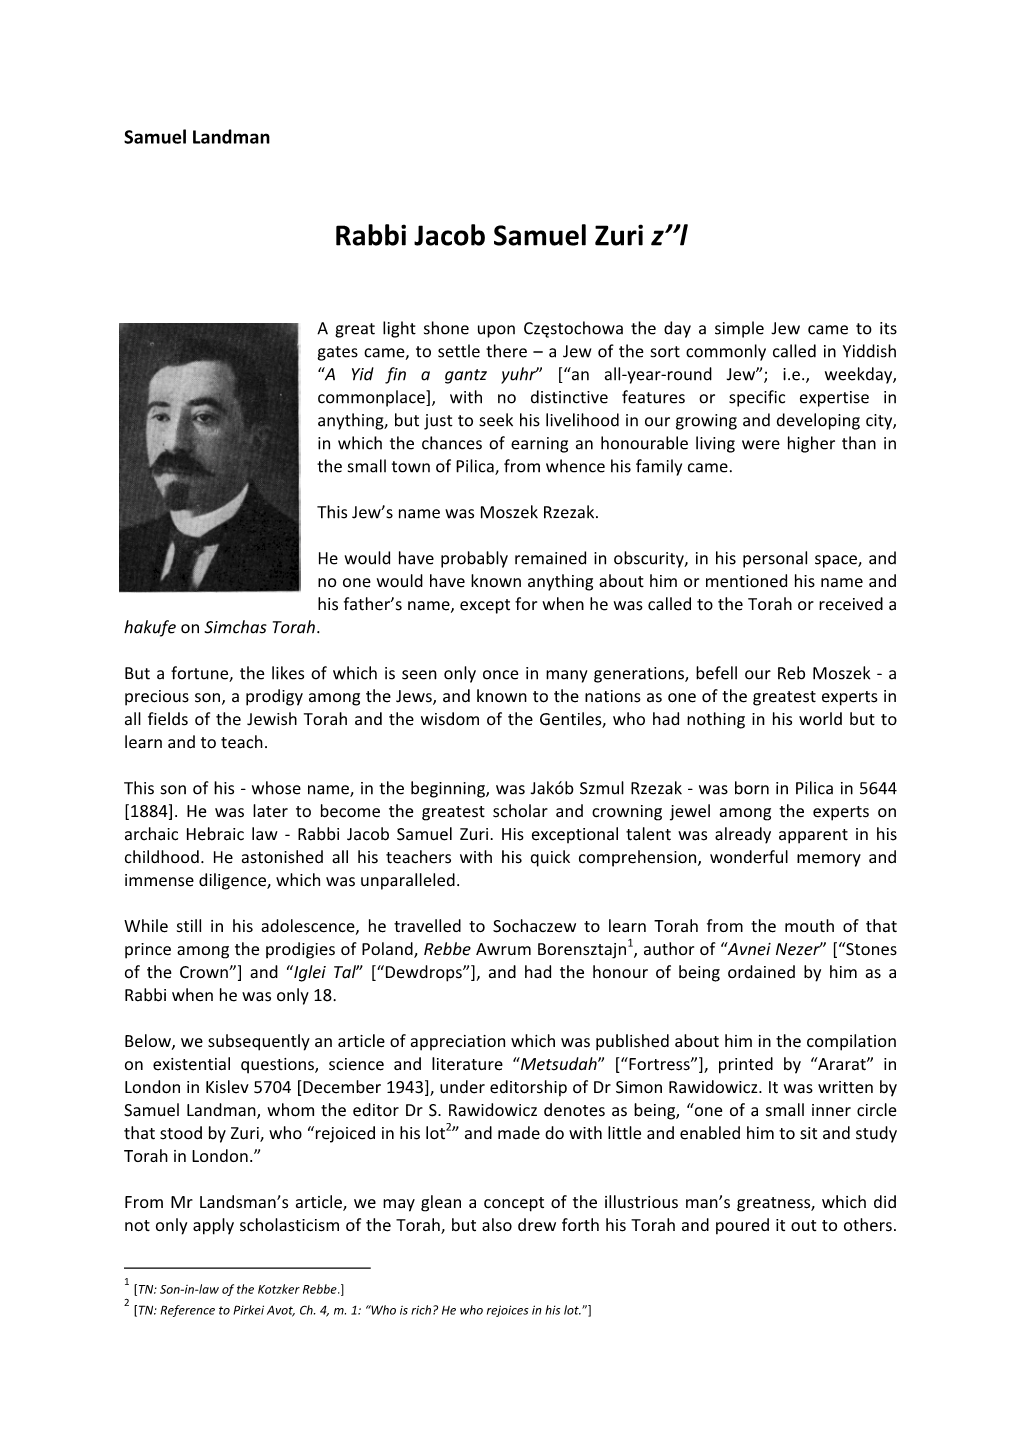 Rabbi Jacob Samuel Zuri Z’’L